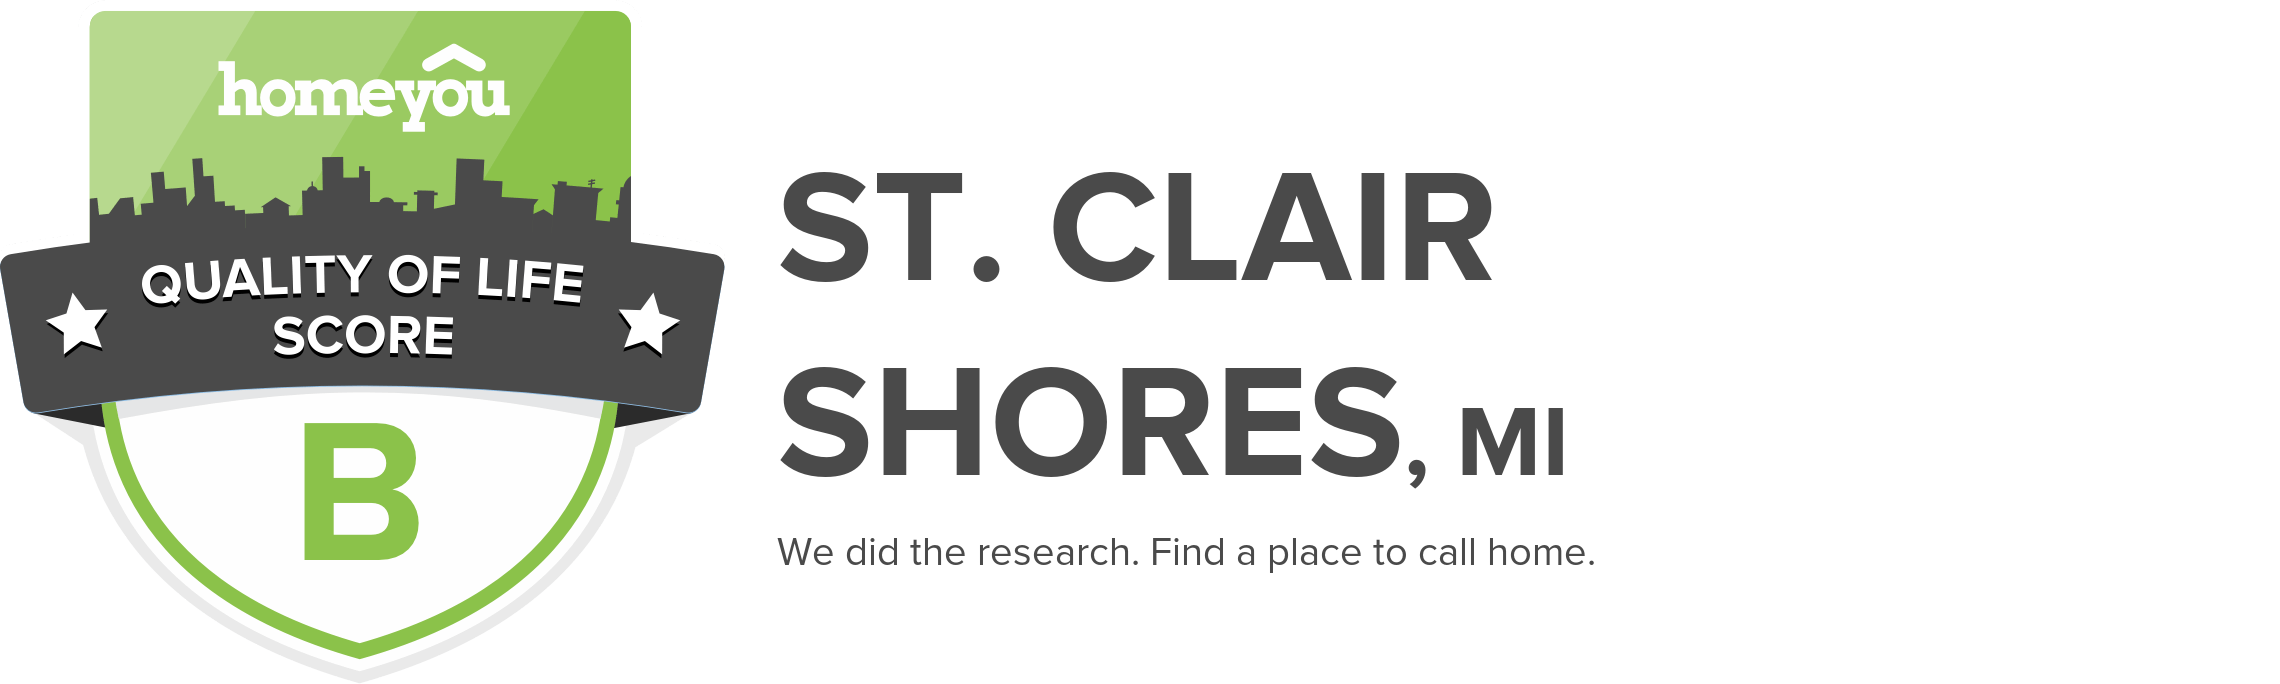 St. Clair Shores, MI